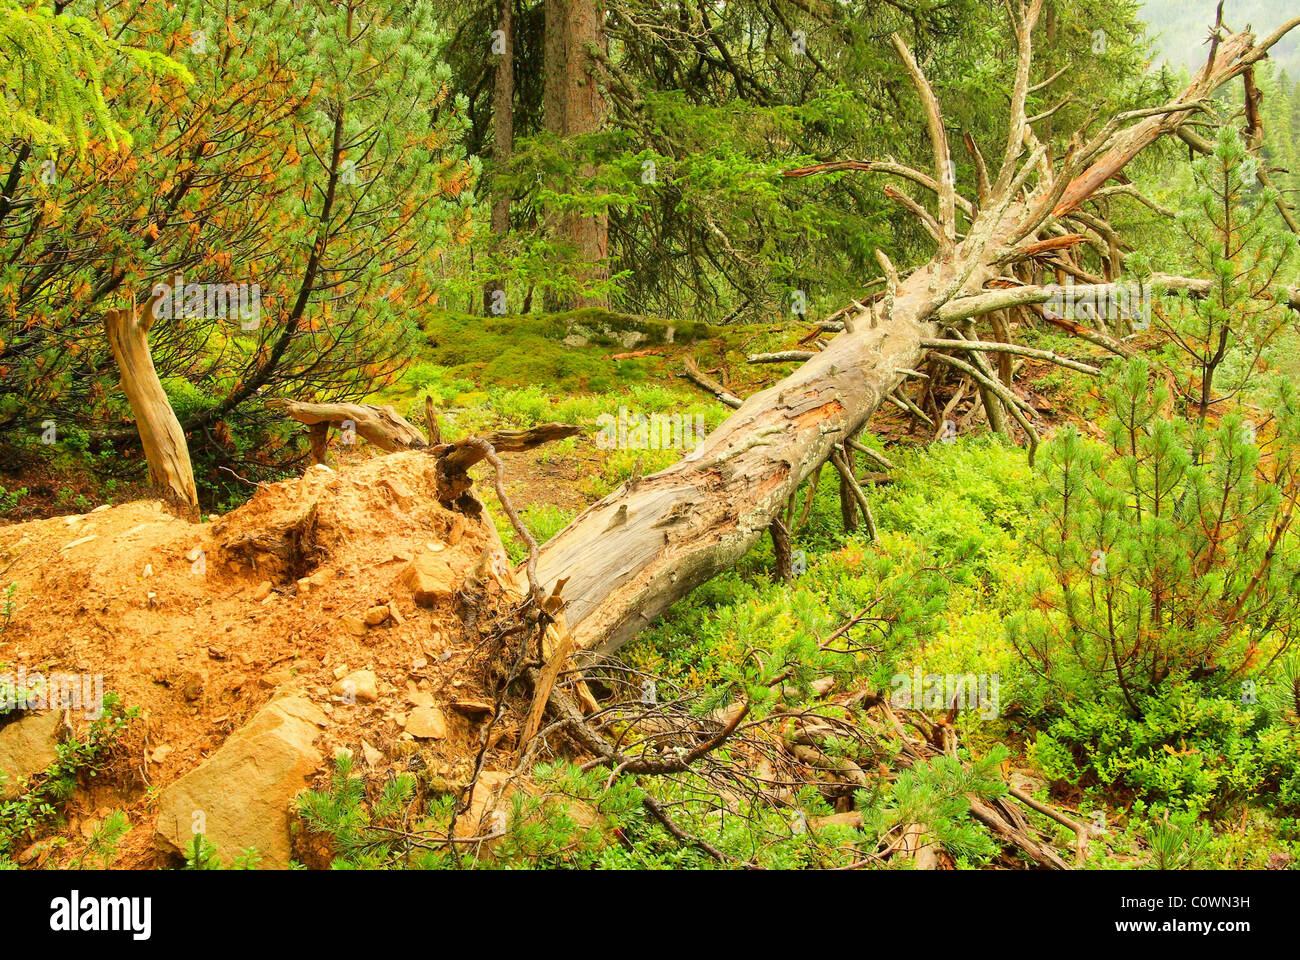 Baum nach Sturm - tree after storm 01 Stock Photo